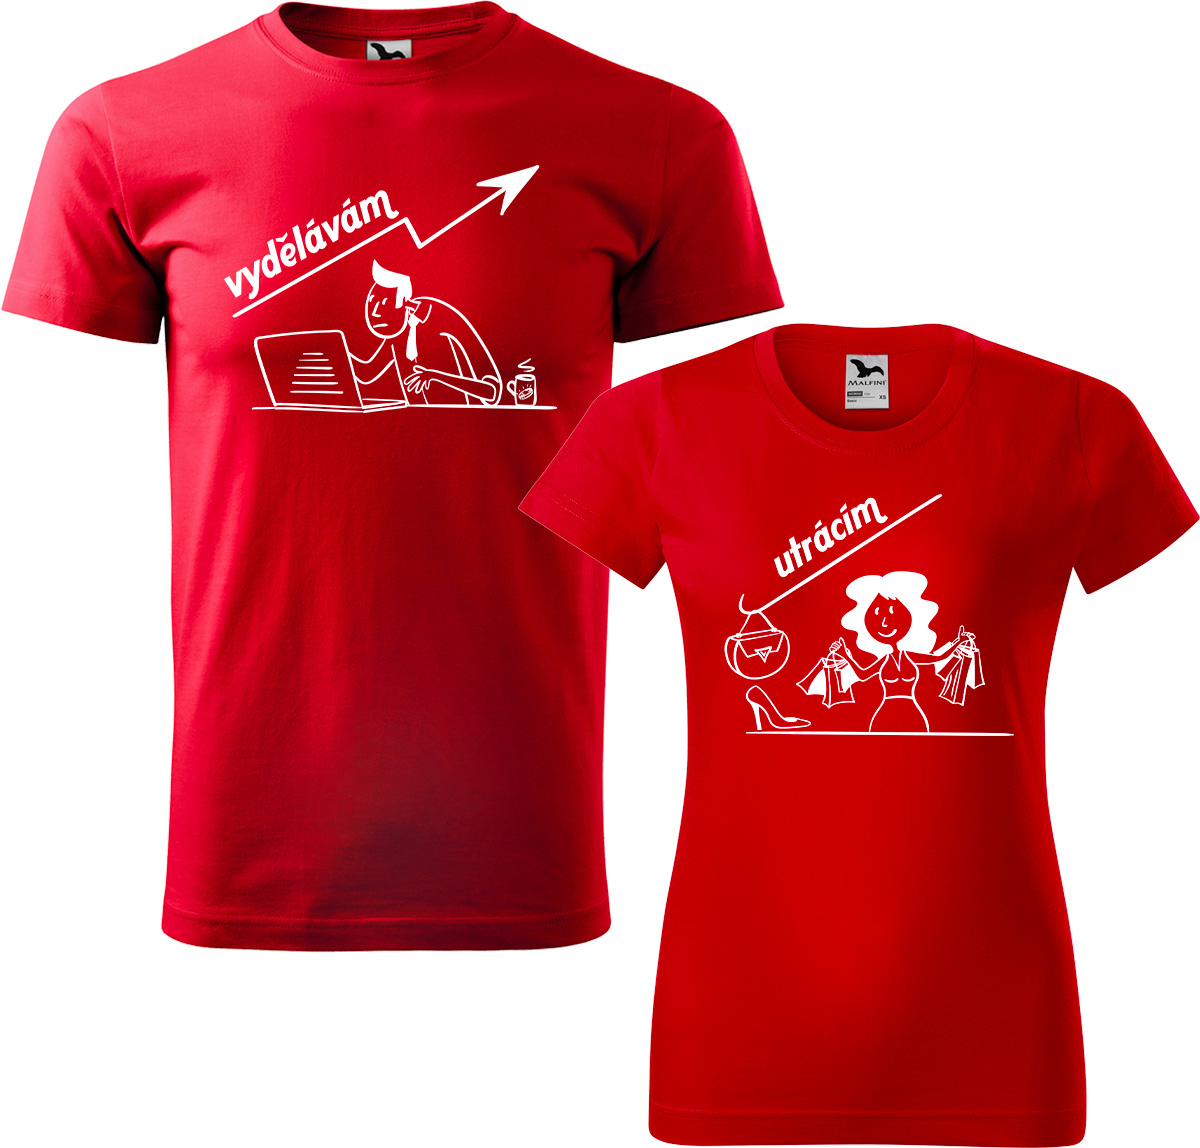 Trička pro páry - Vydělává, utrácí Barva: Červená (07), Velikost dámské tričko: XL, Velikost pánské tričko: XL